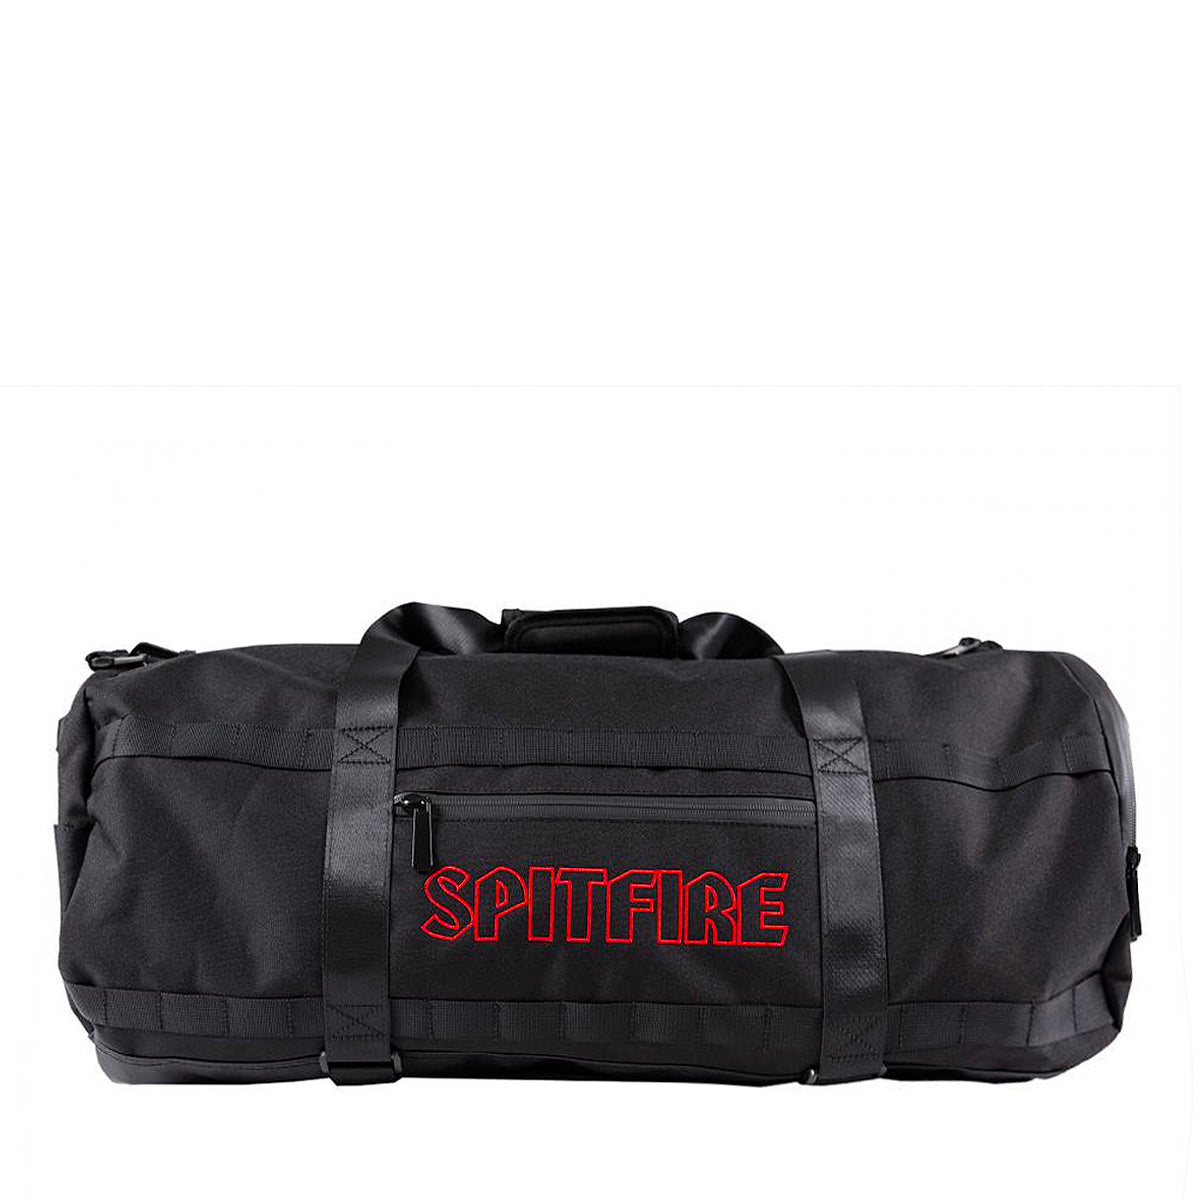 Spitfire Road Dog Duffle Bag - Black - Prime Delux Store